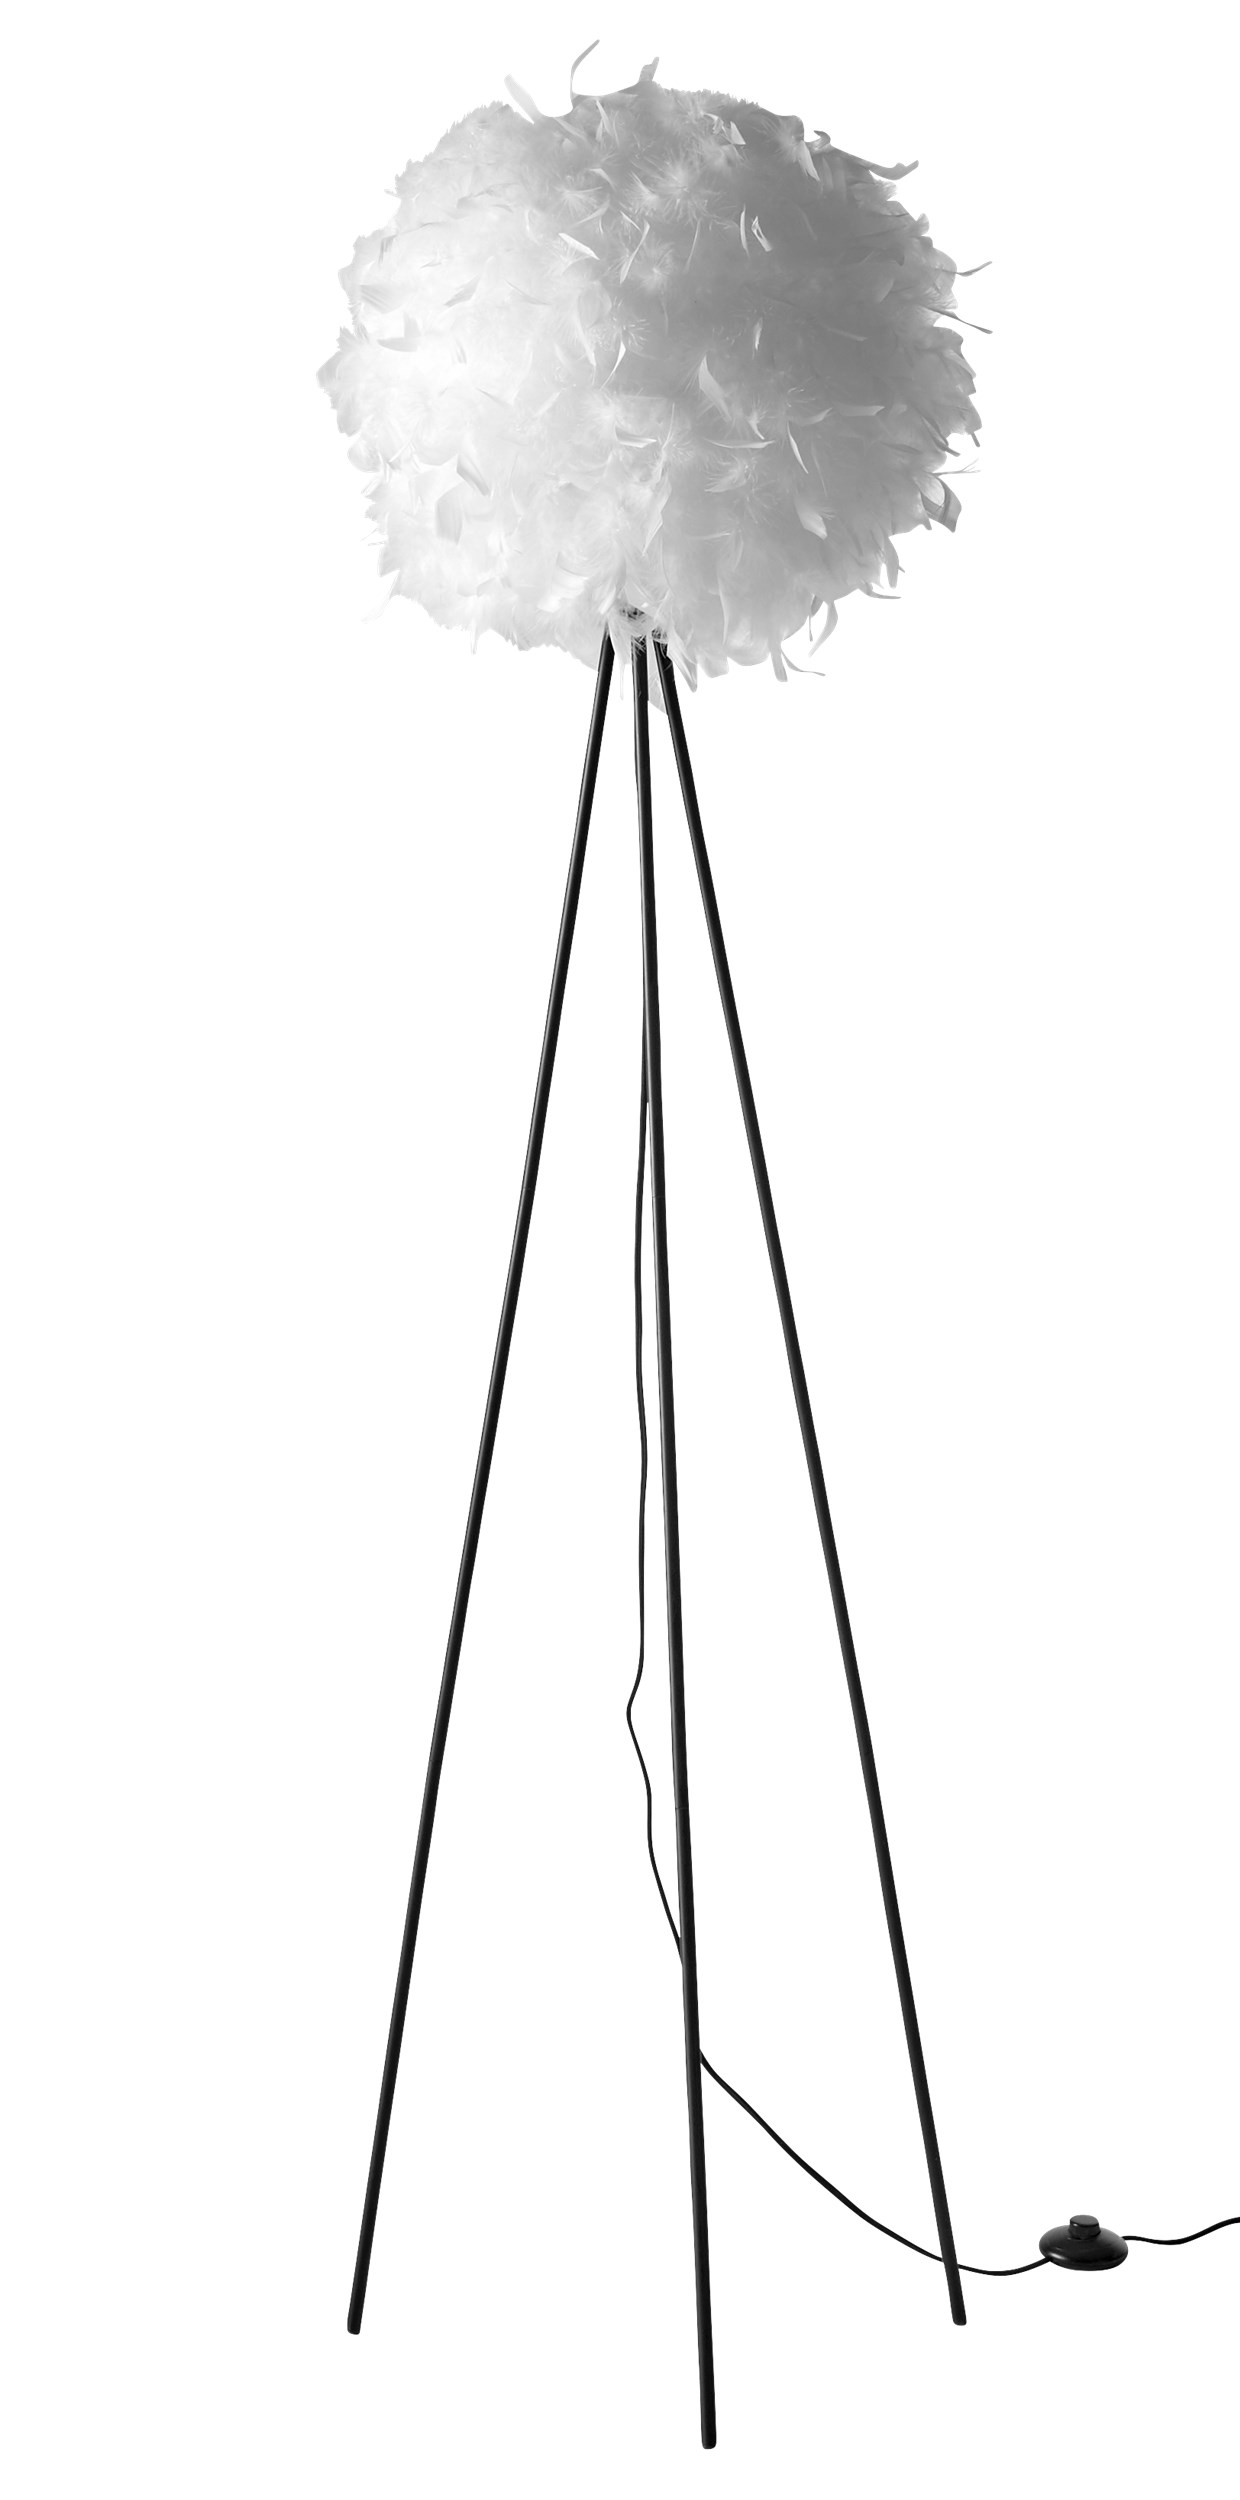 Fluffy Golvlampa 150 x 40 cm - Vit fjäderskärm, mattsvart metallstomme och svart sladd